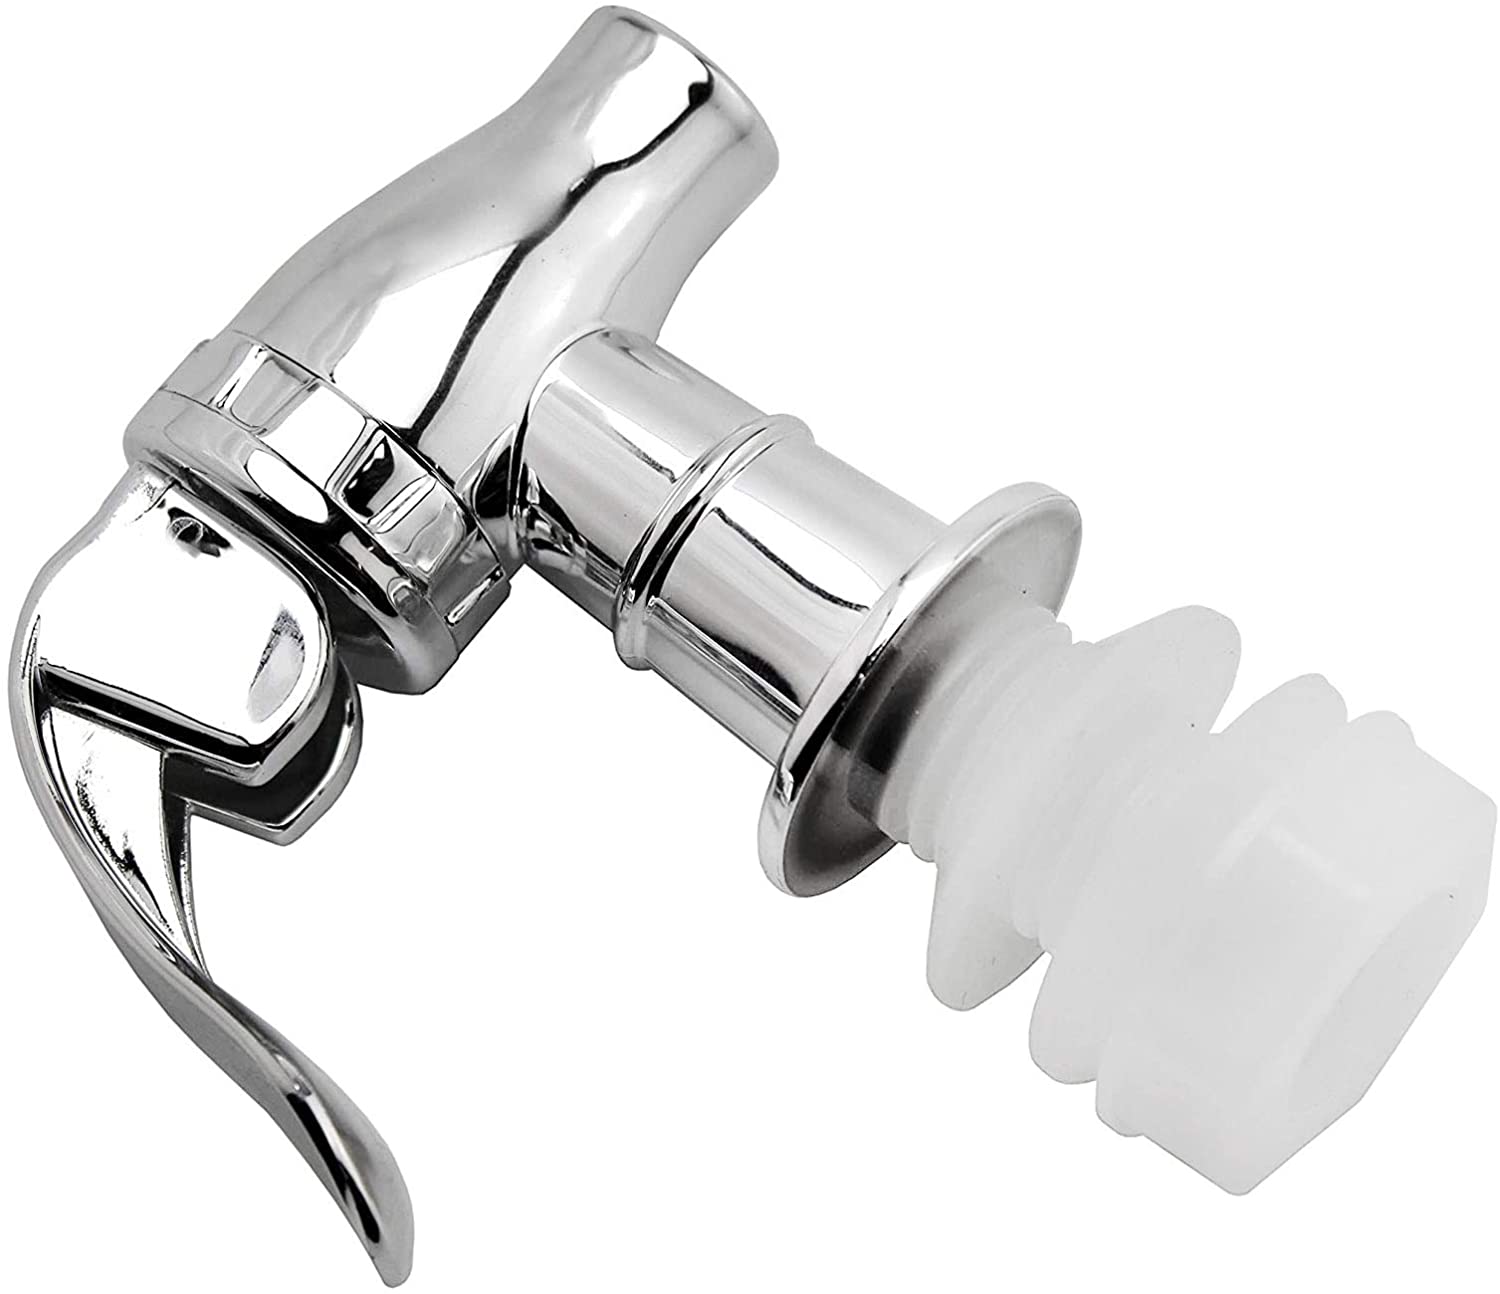 Push Style Spigot for Beverage Dispenser Carafe - sh237cb01Spigot